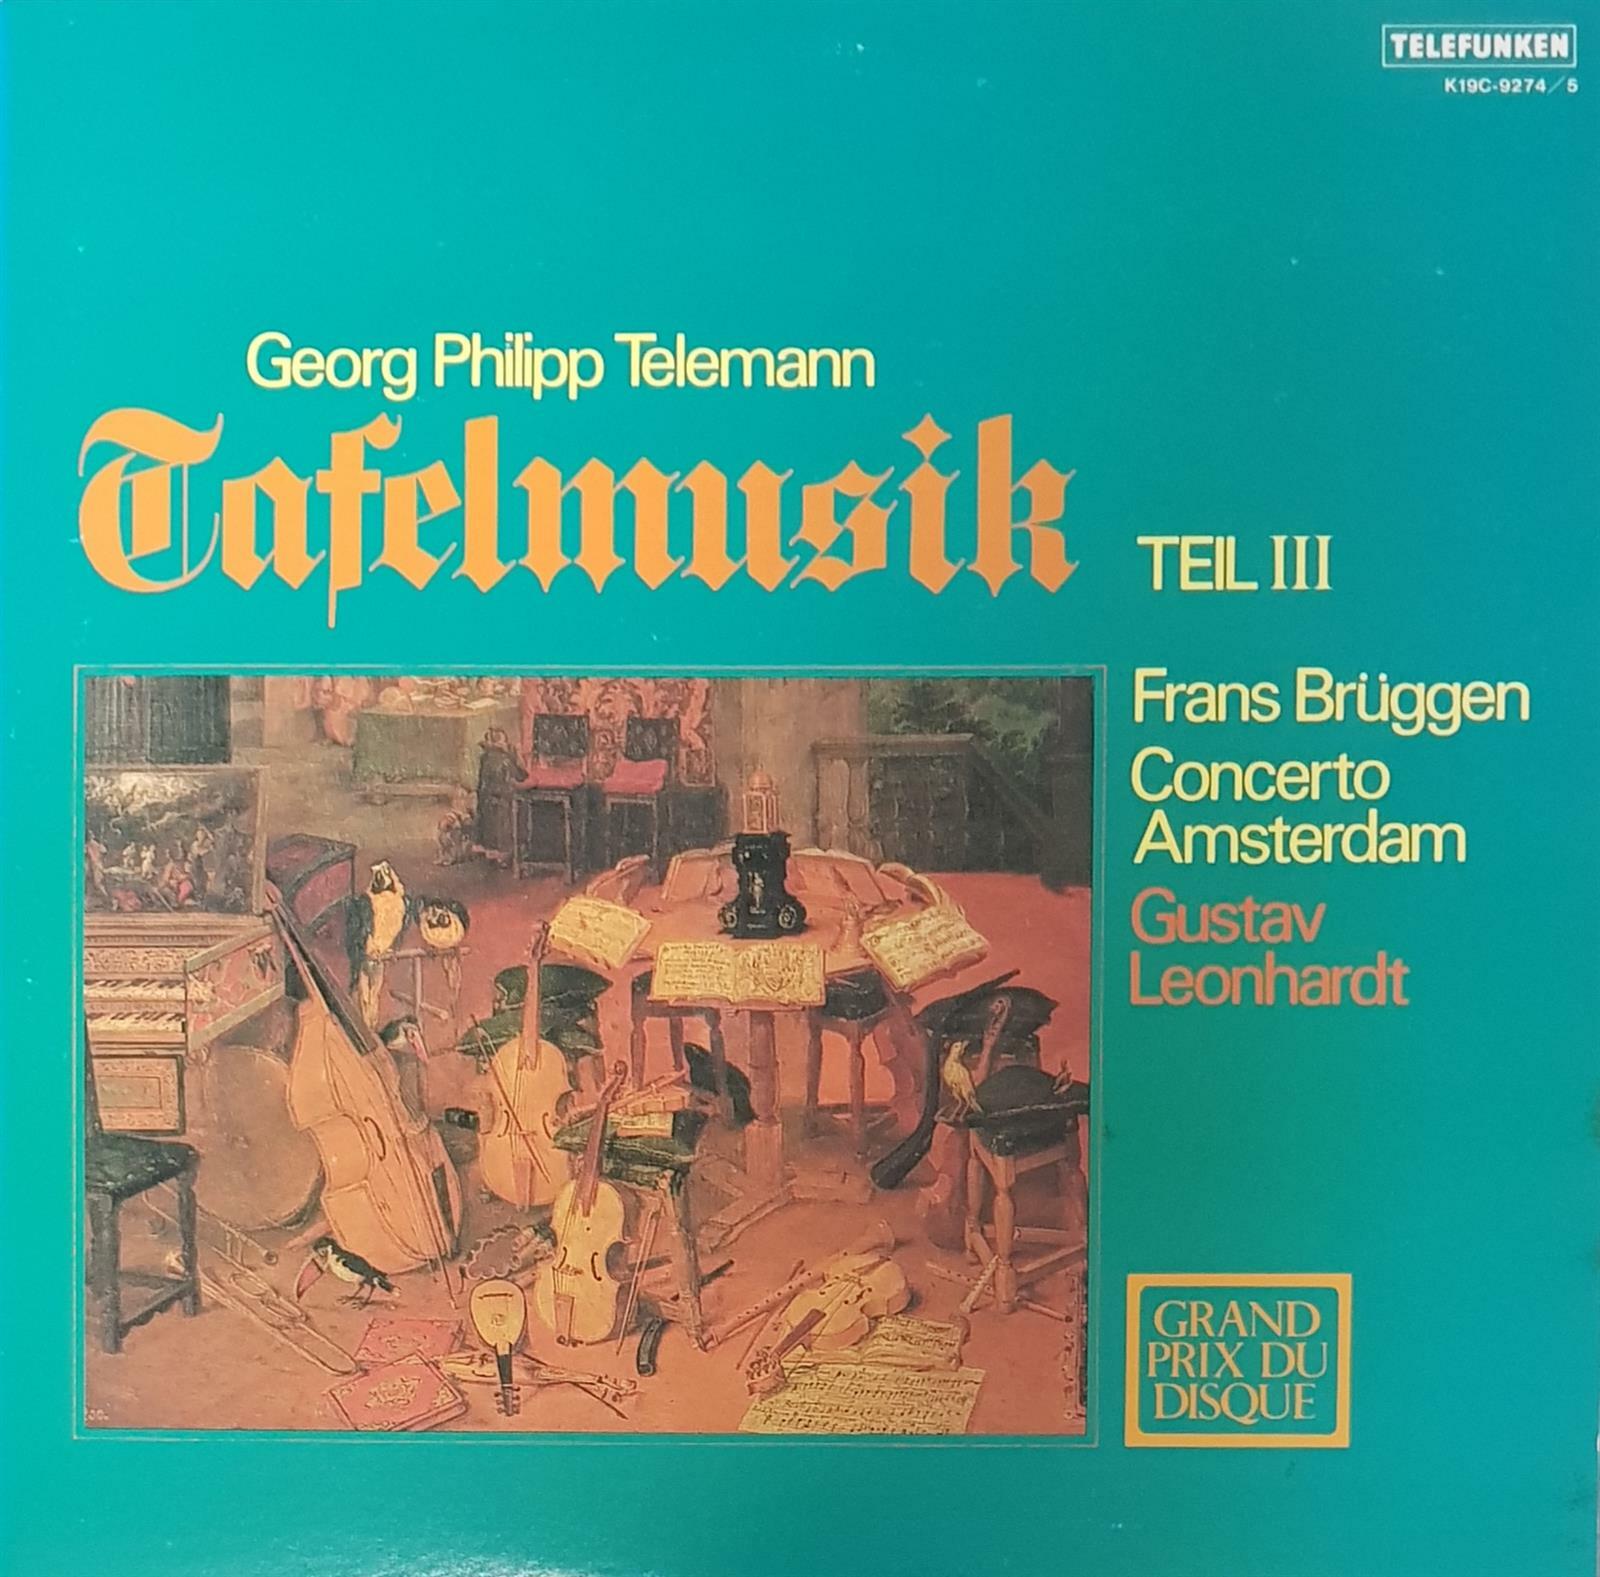 [중고] [일본반][LP] Gustav Leonhardt - Georg Philipp Telemann: Tafelmusik Teil III [Gatefold] [2LP]